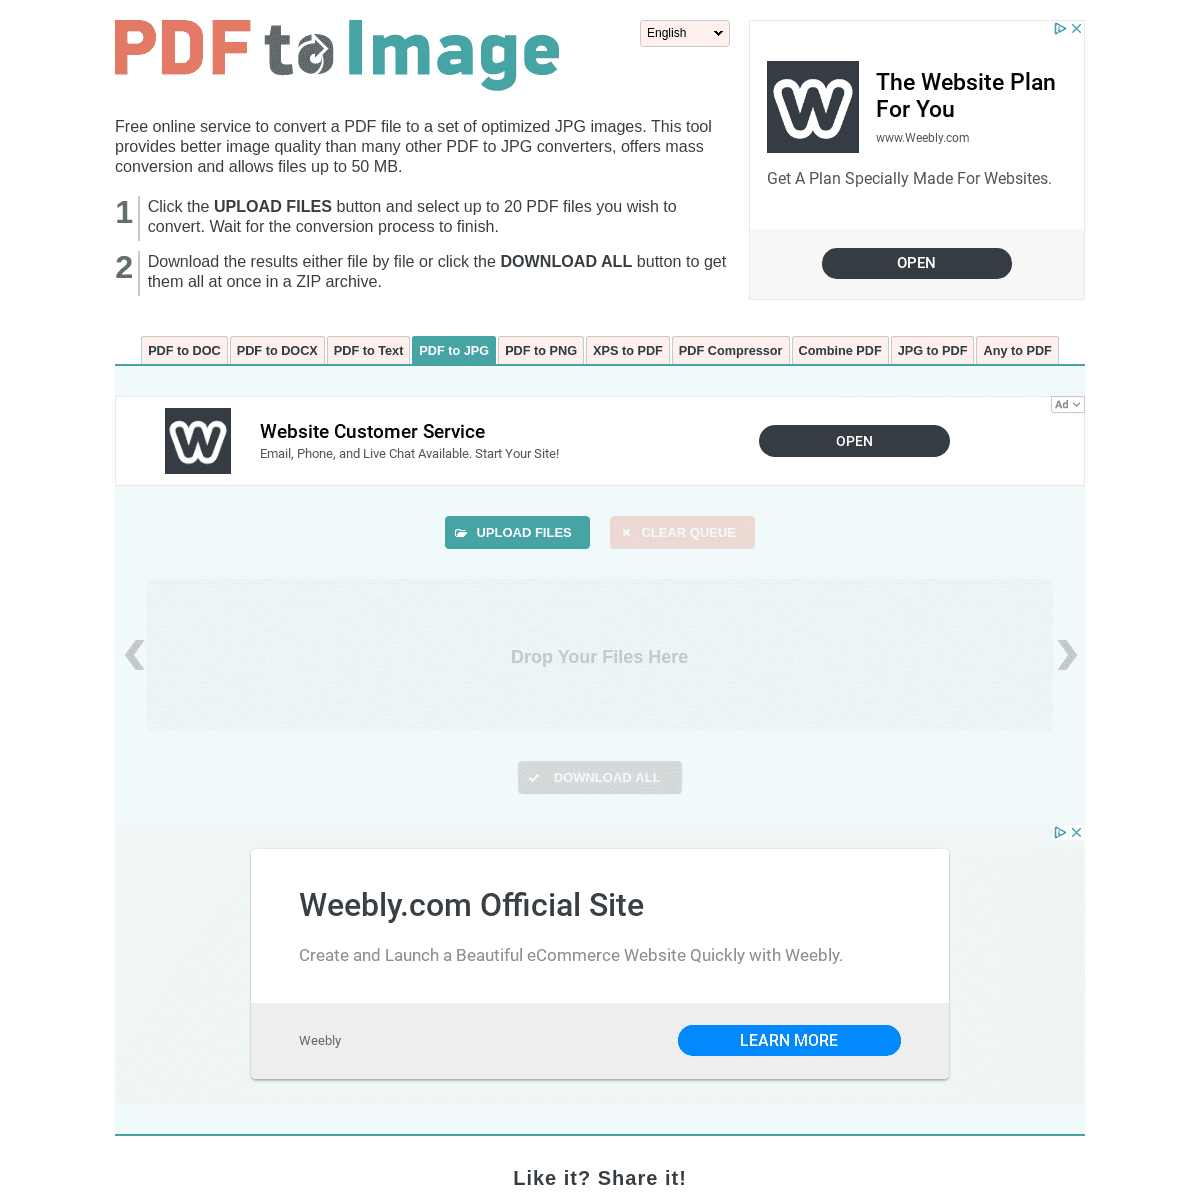 A complete backup of pdftoimage.com